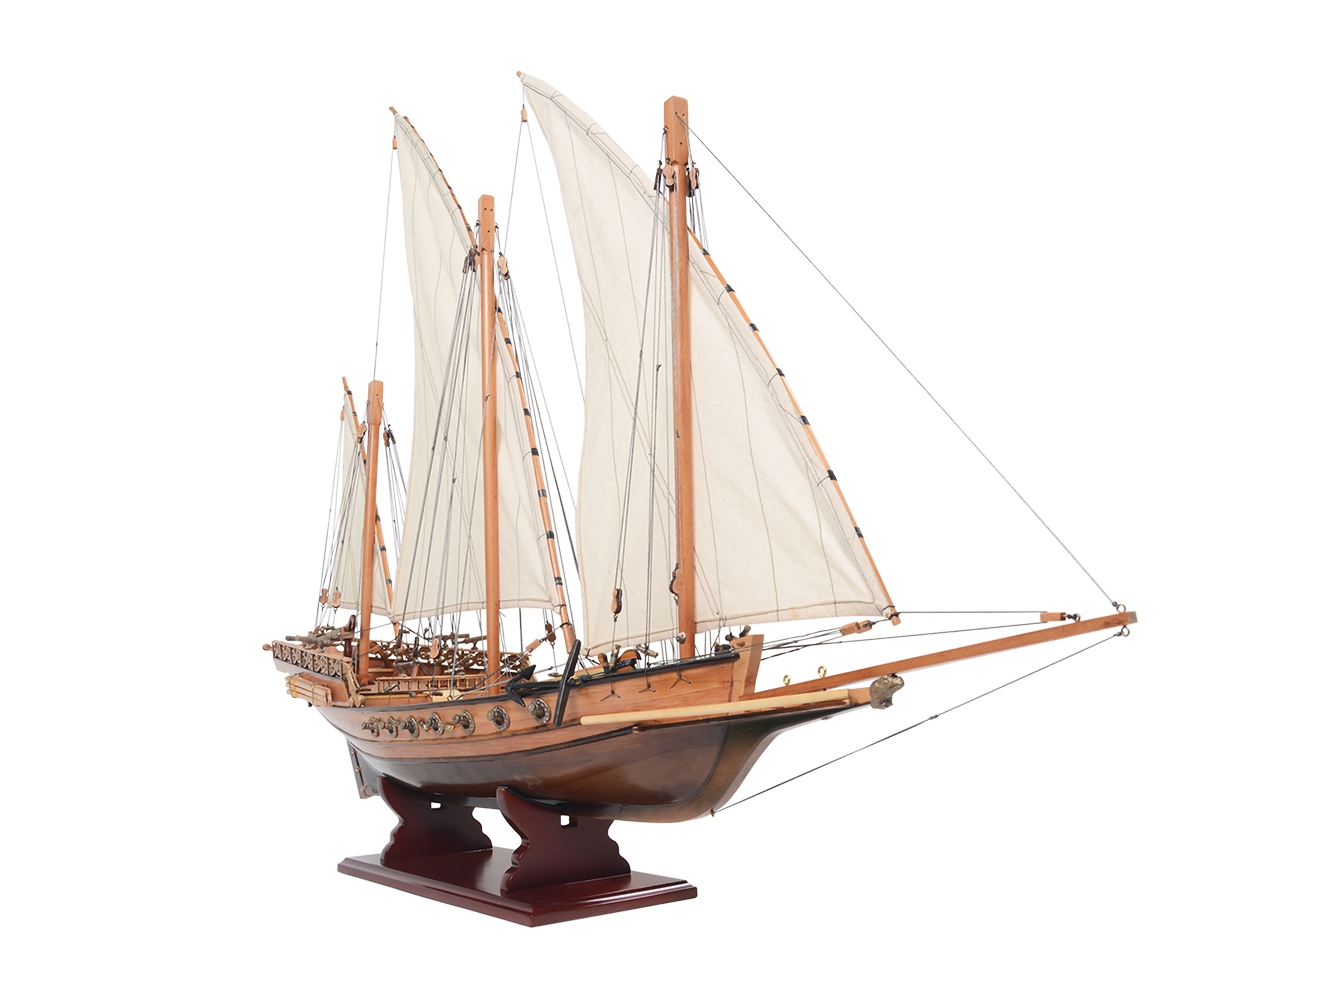 Xebec Model Ship - OMH (B058)